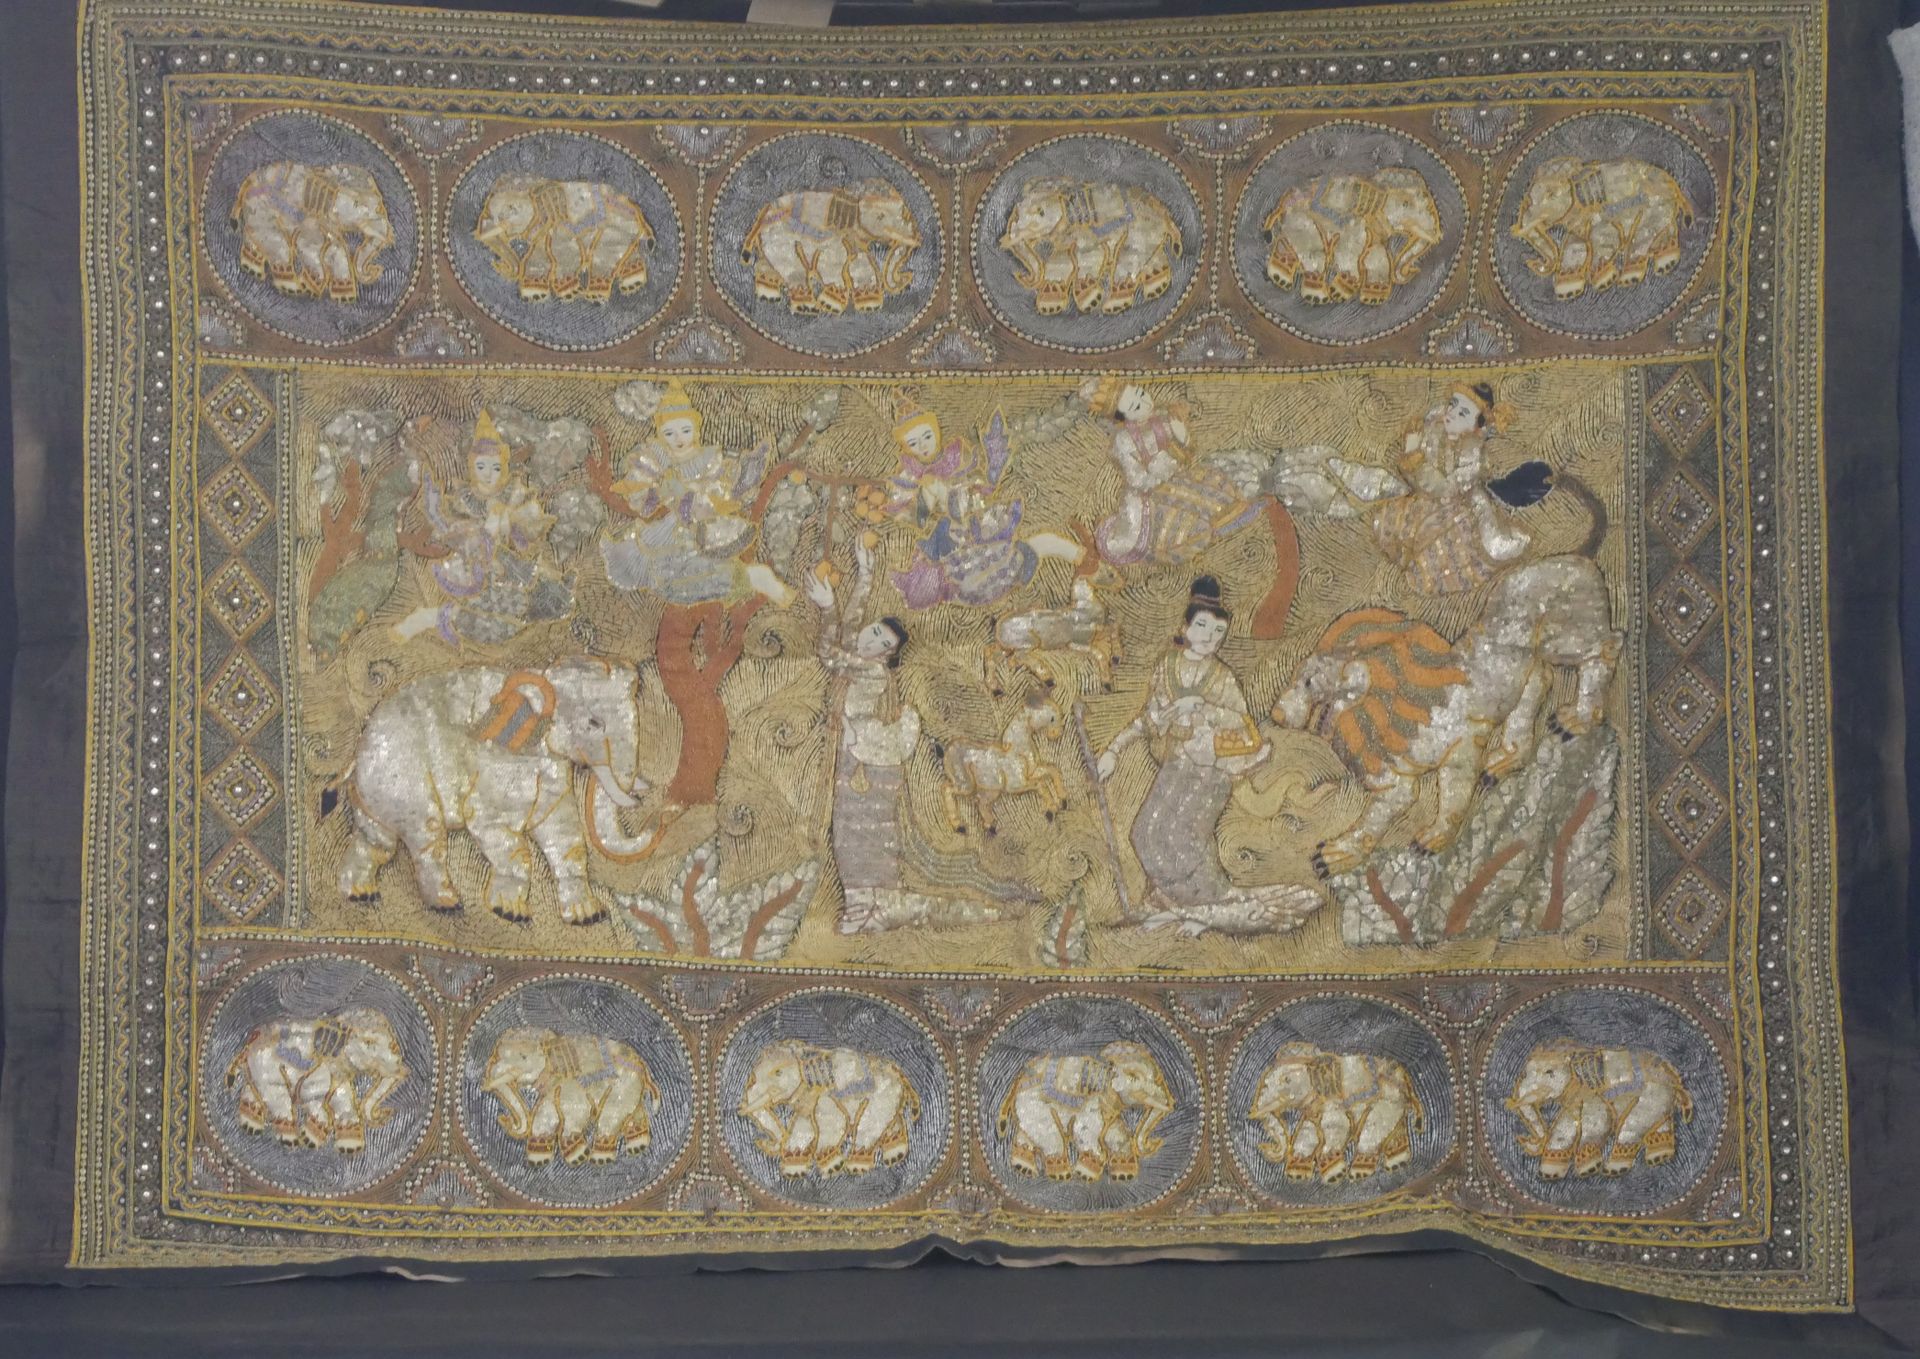 Null 丝绸、银线和坎尼特线装饰，描绘了宫廷女官、大象、狮子和跳舞的女孩。两块表现大象的奖章楣板。20世纪的印度尼西亚作品。140 x 175厘米。